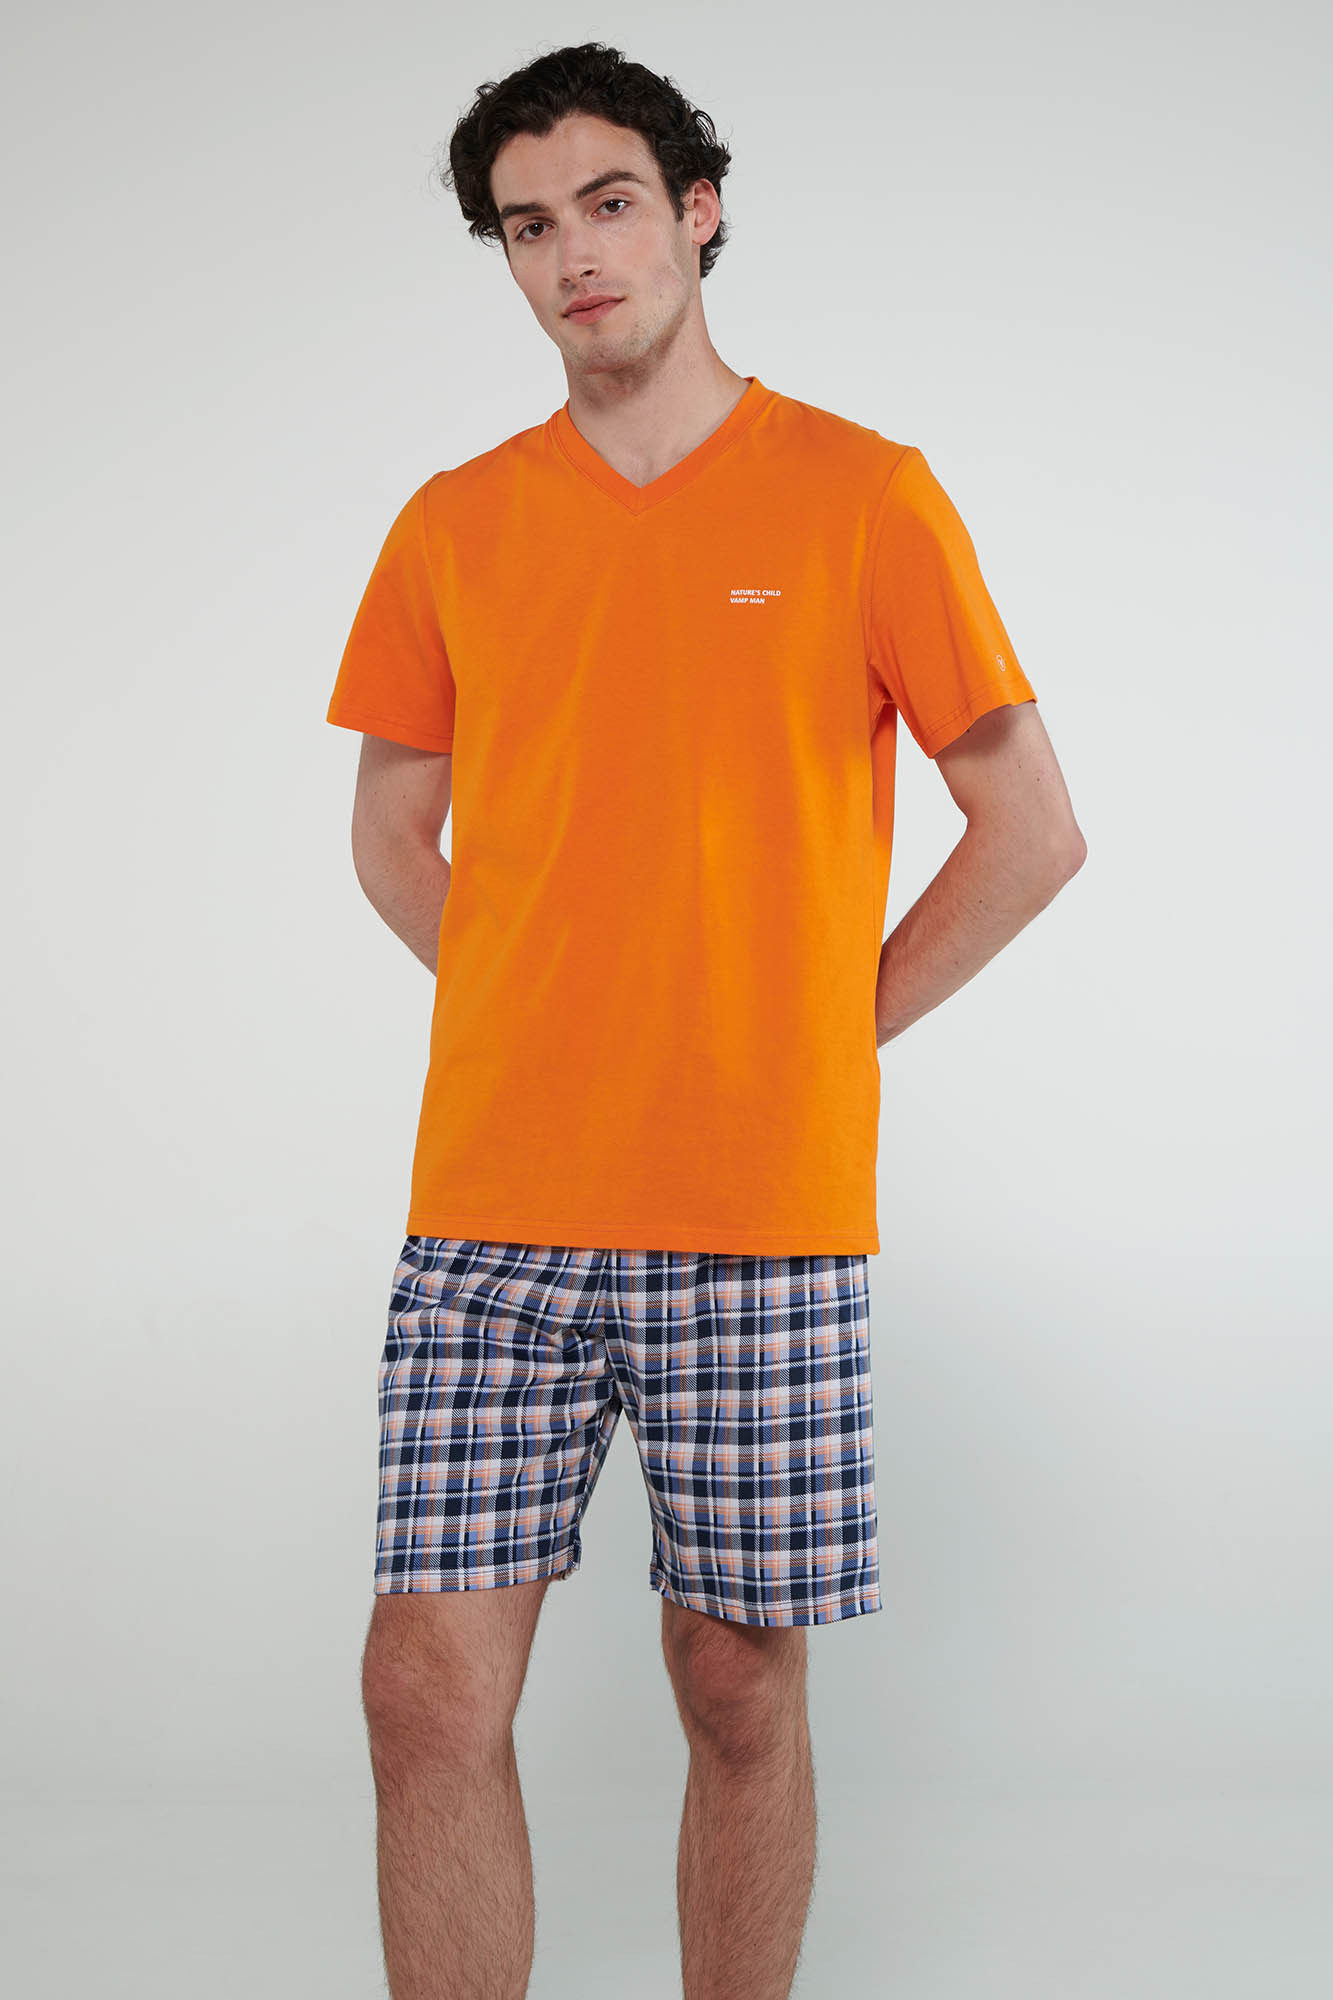 Vamp - Pyžamo s krátkými rukávy 20620 - Vamp orange russet XL